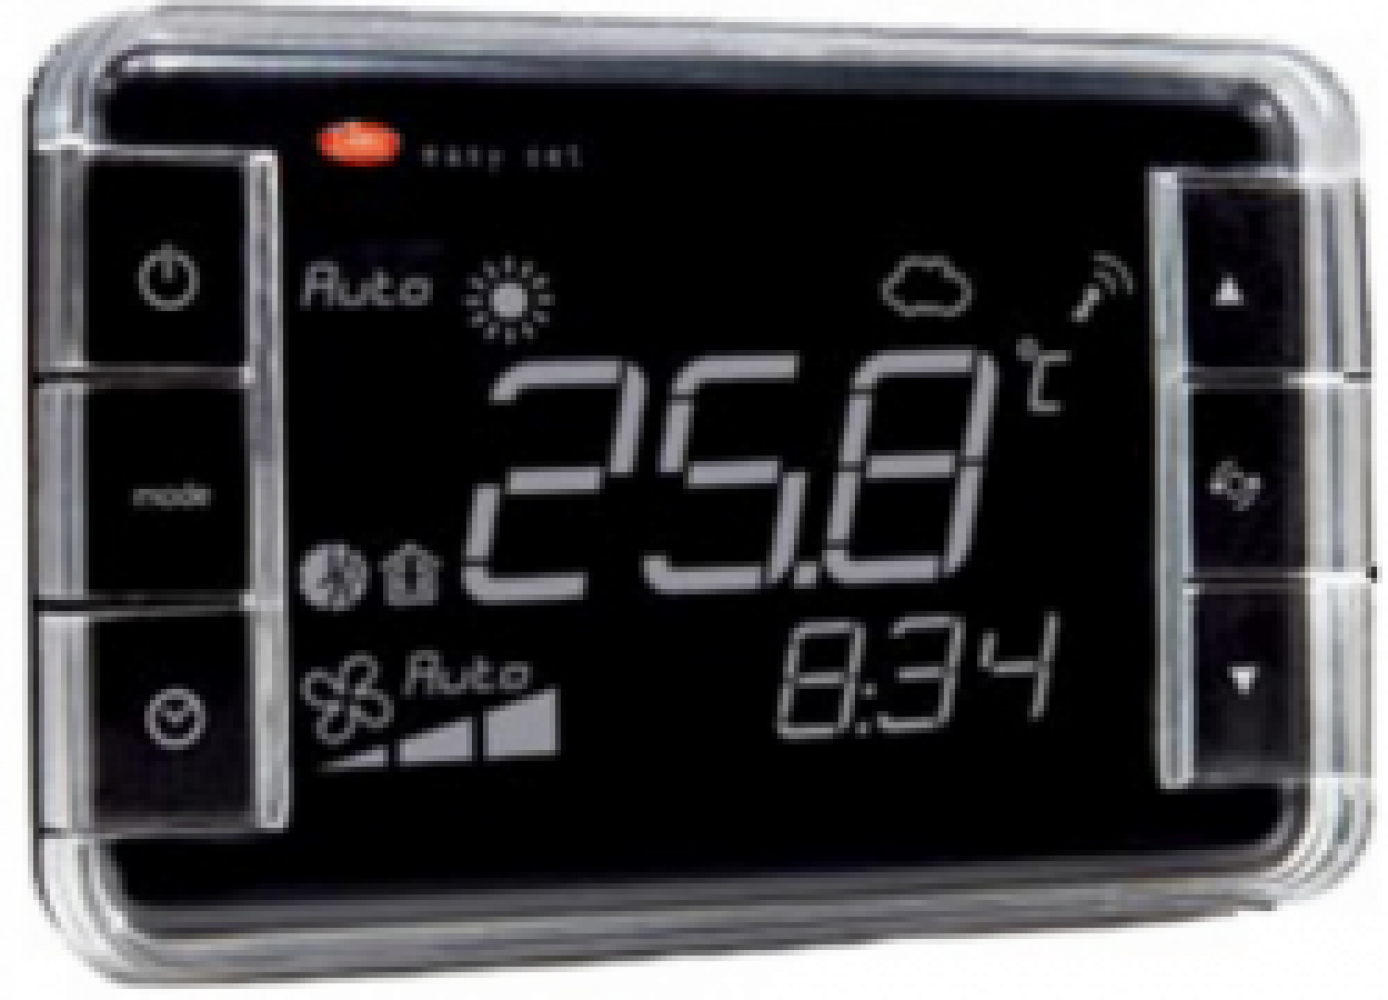 EW00TA2100 Термостат Easyset aria, контроль температуры, корпус черного цвета, &quot;прямое&quot; отображение